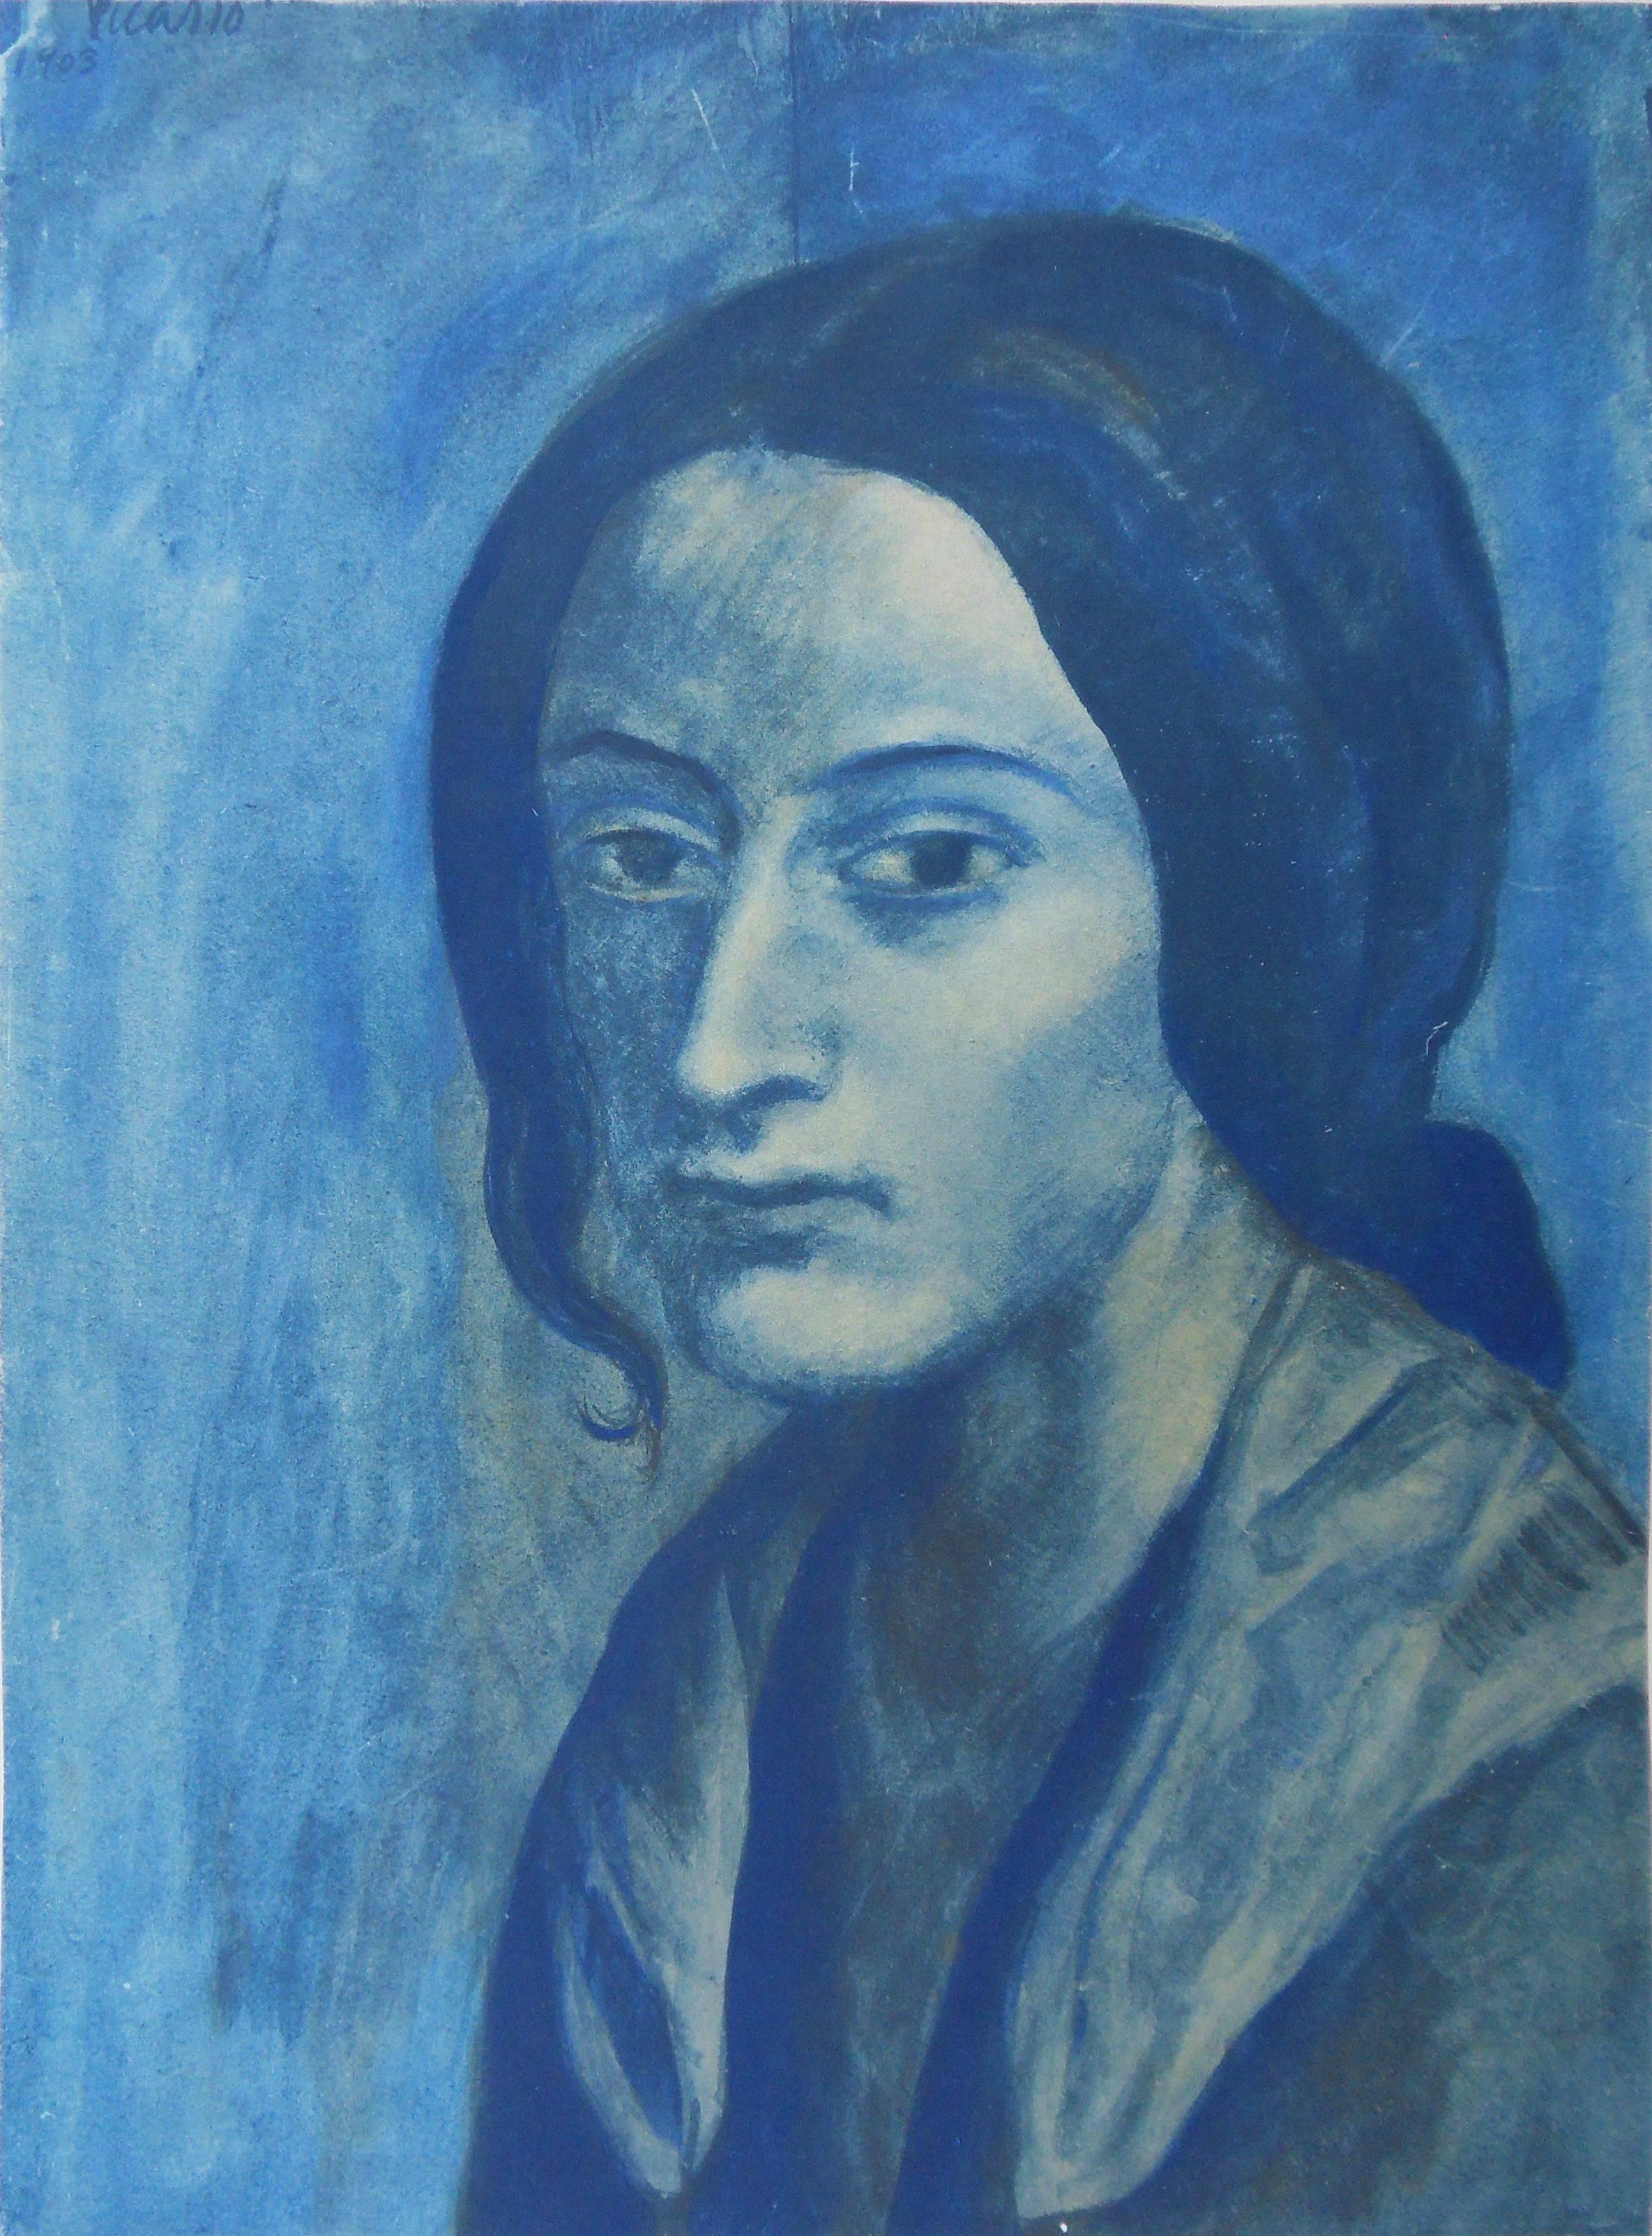 Unknown Portrait Print - Pablo PICASSO (after) : Portrait in Blue - pochoir - 500 copies - 1963